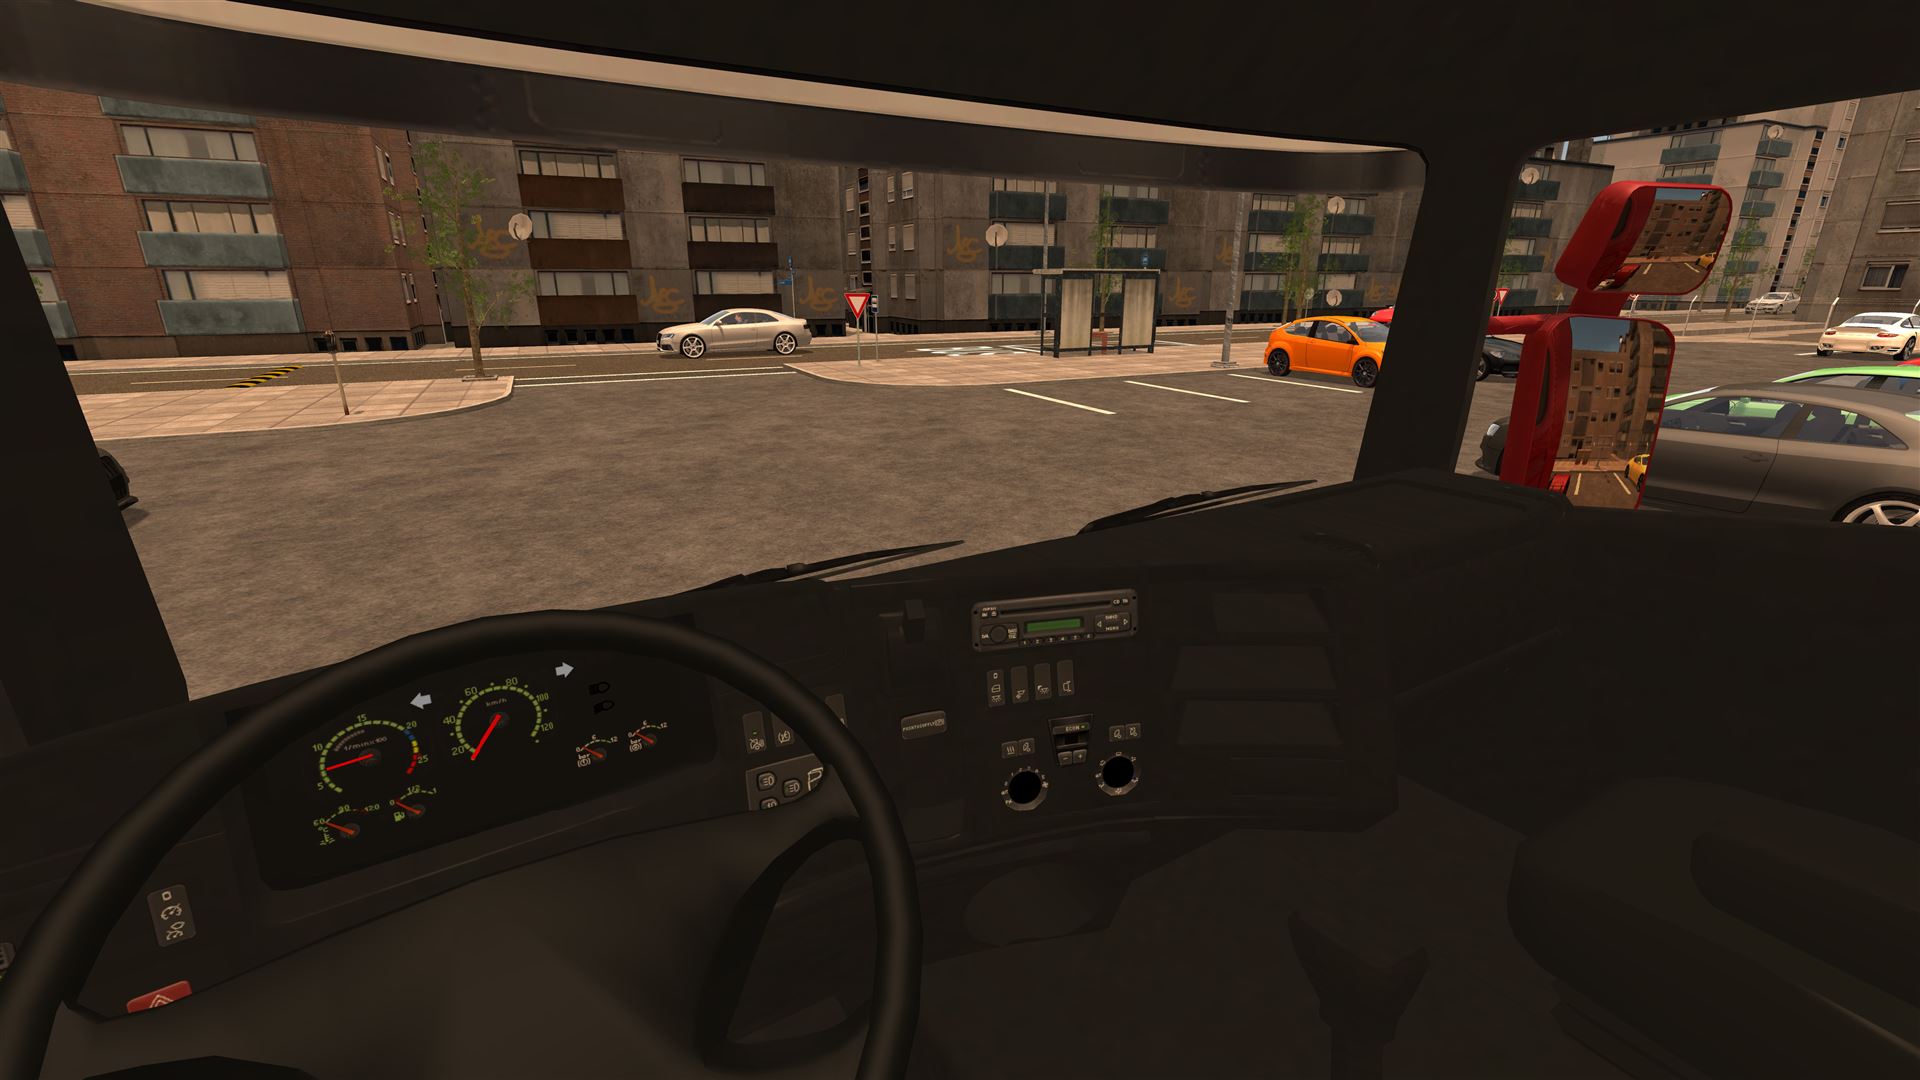 2016 school driving simulator games